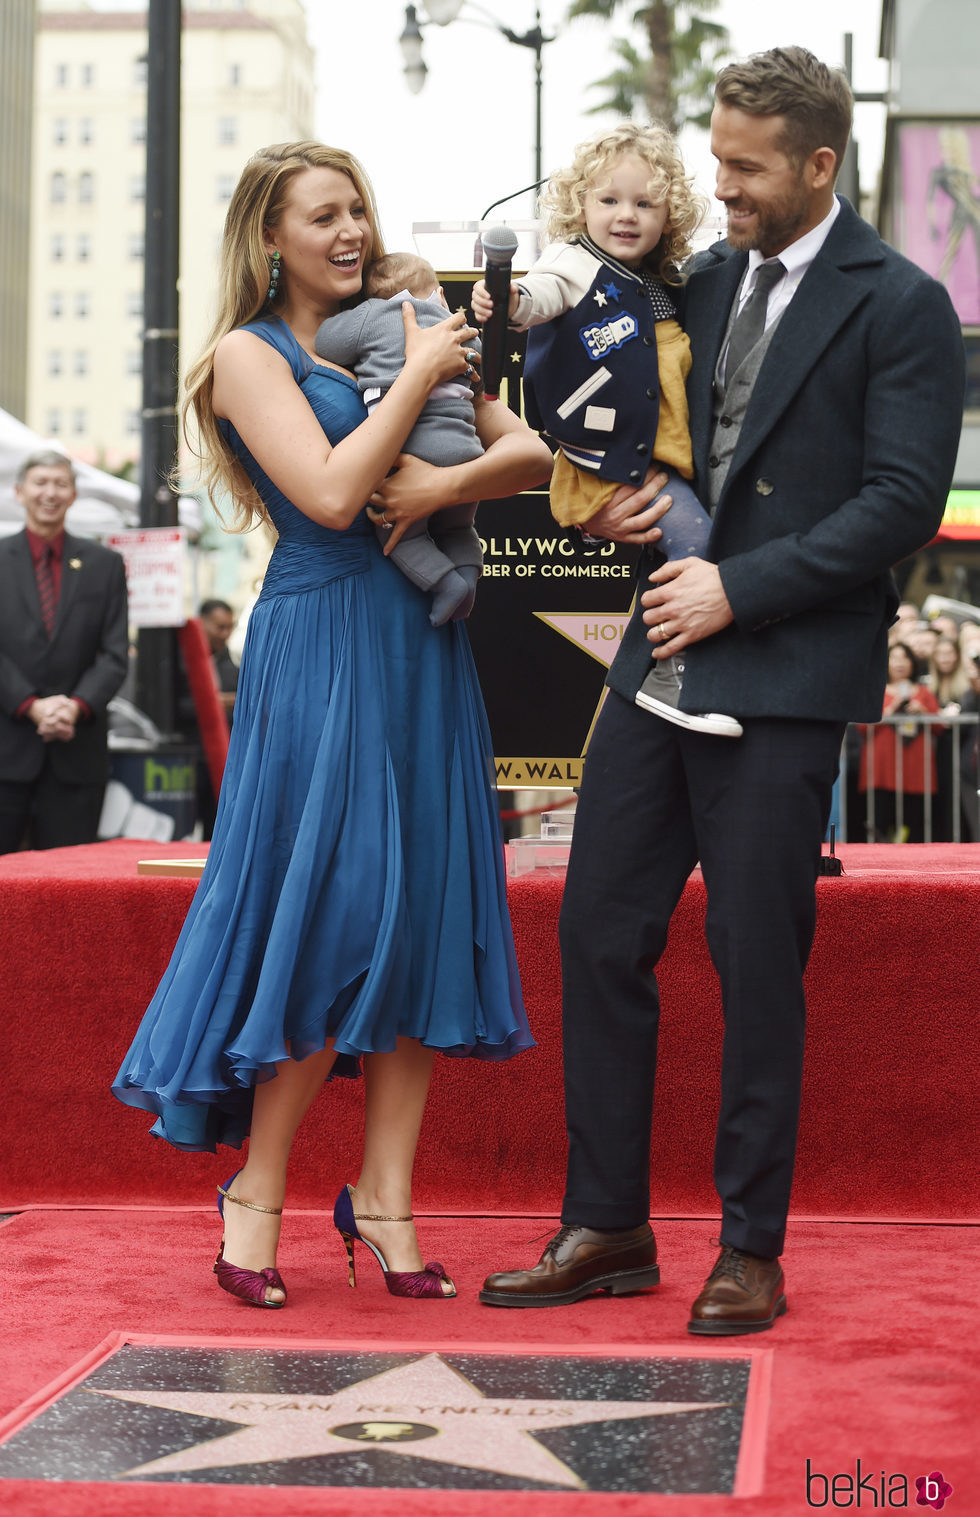 Ryan Reynolds recibiendo la estrella del Paseo de la Fama de Hollywood con Blake Lively y sus hijas